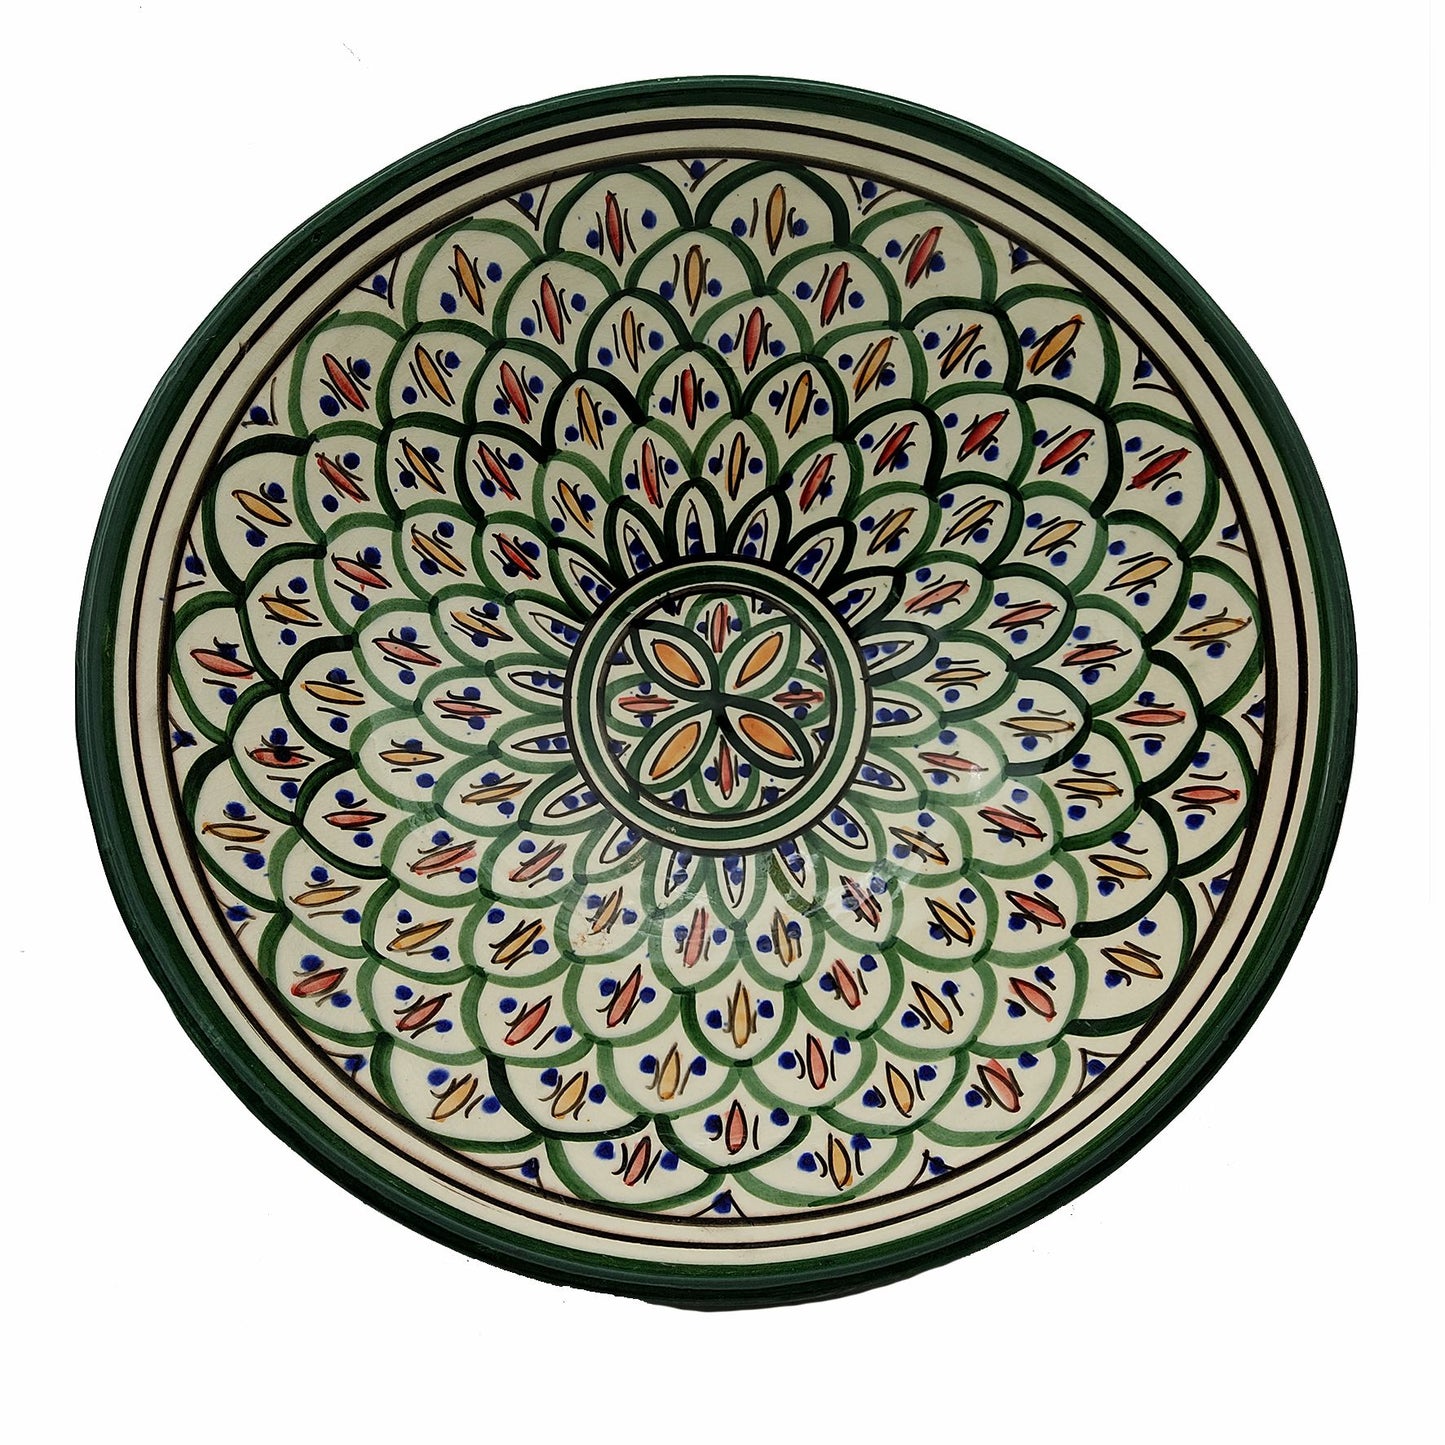 Ciotola Piatto Salse Zuppa Etnica Marocco Marocchina Ceramica Terracotta Diam. 31 cm 0902221202